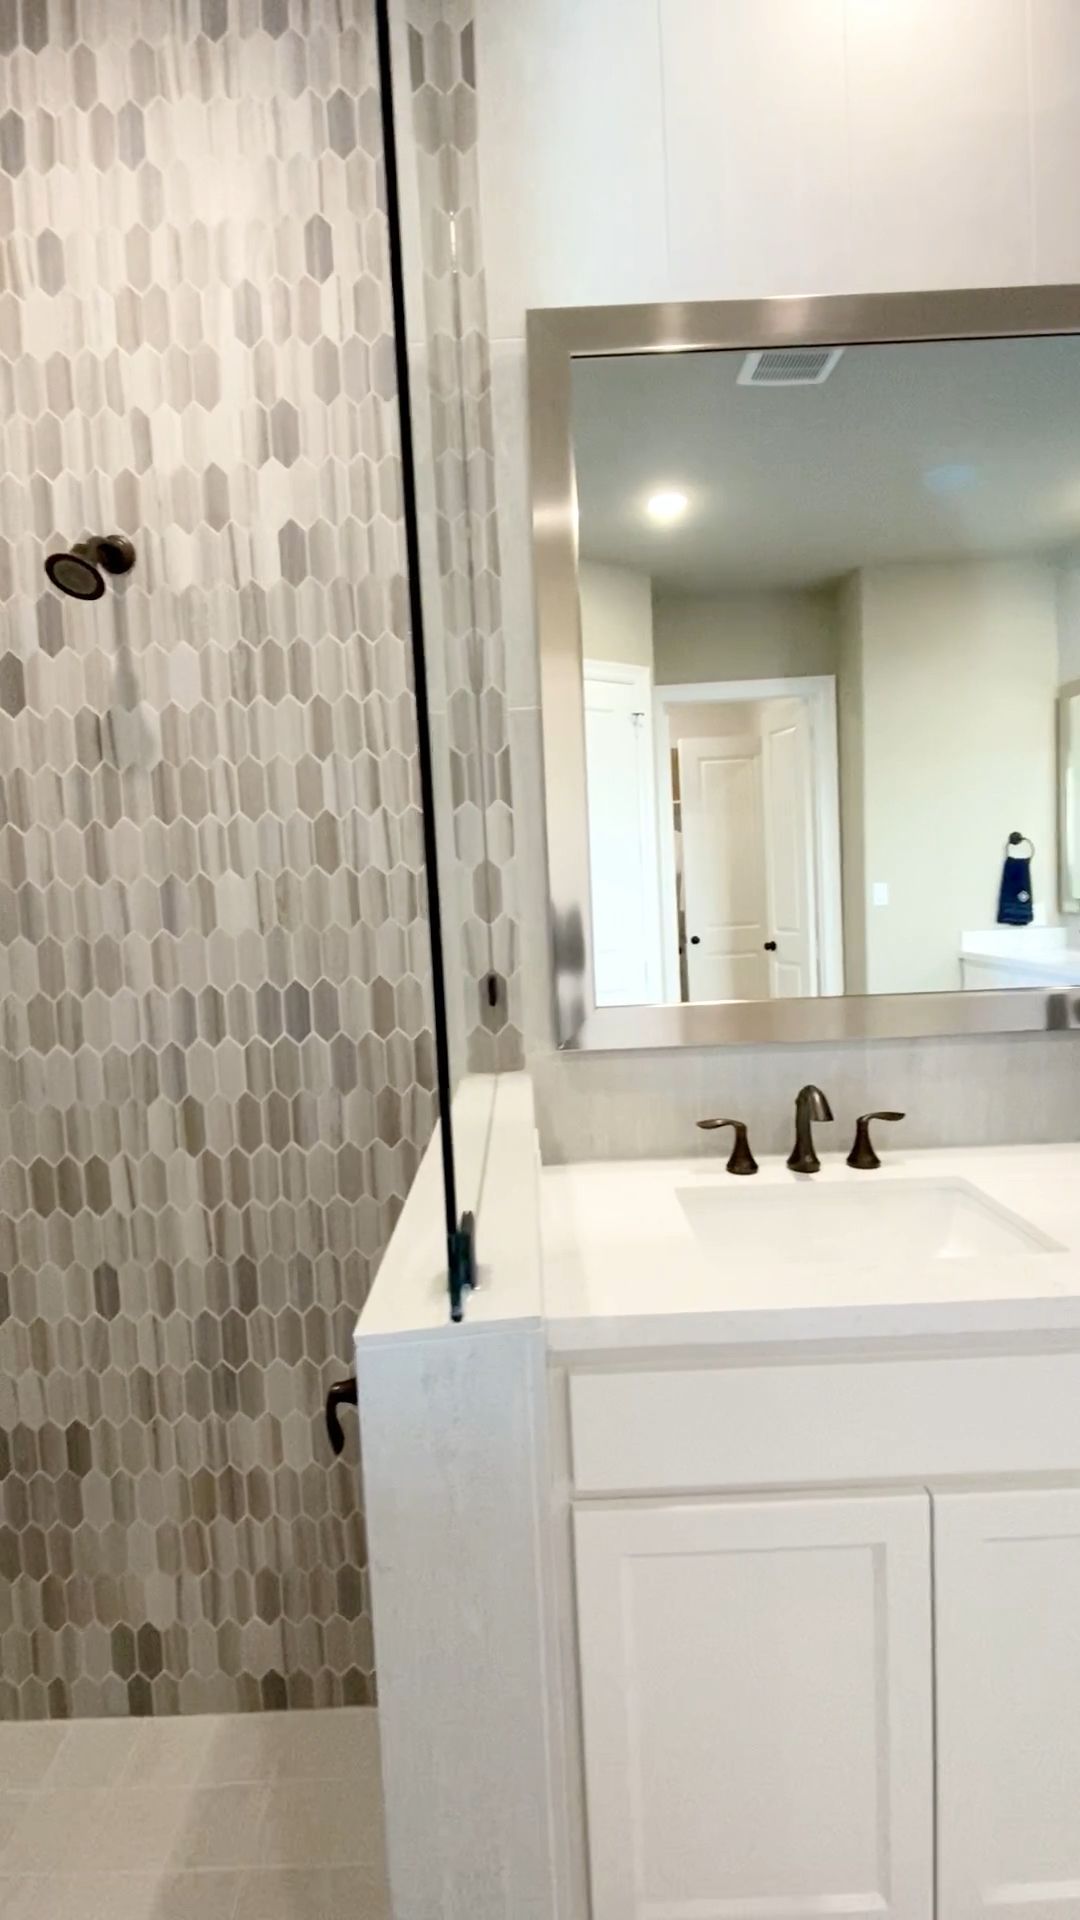 Master Bathroom design with beautiful shower tile - Master Bathroom design with beautiful shower tile -   diy Bathroom tub